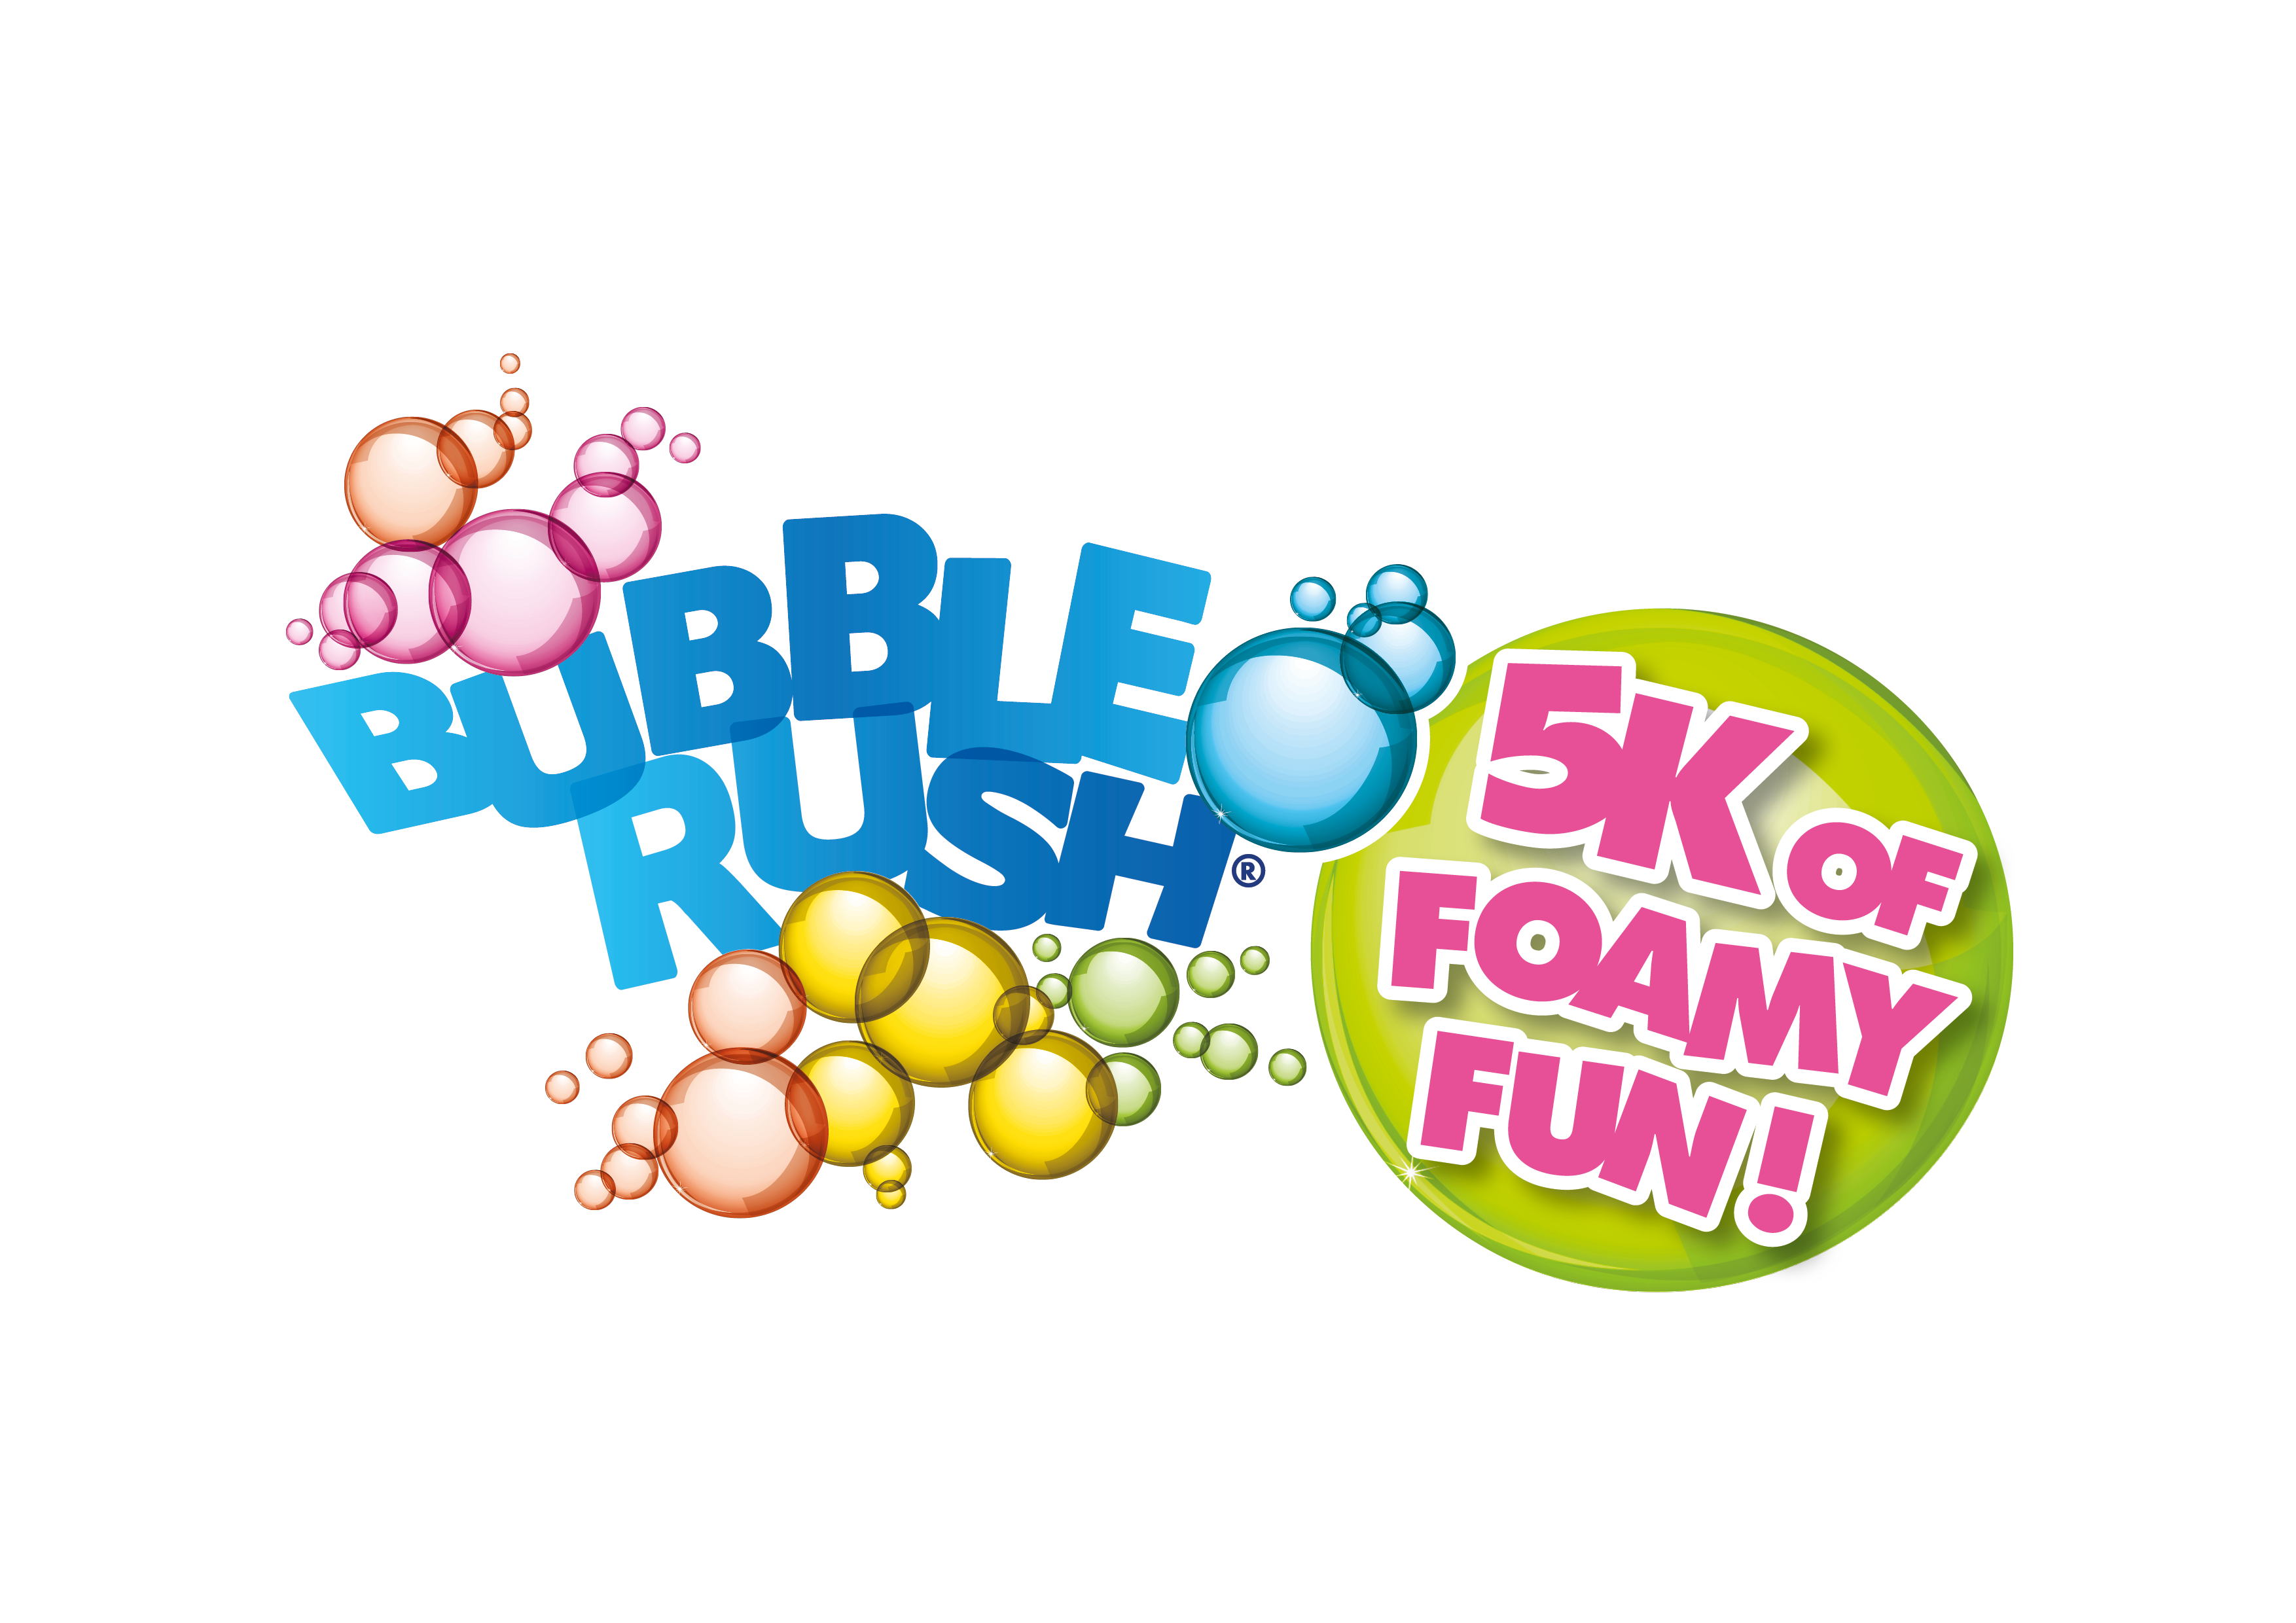 bubble clipart bubbly